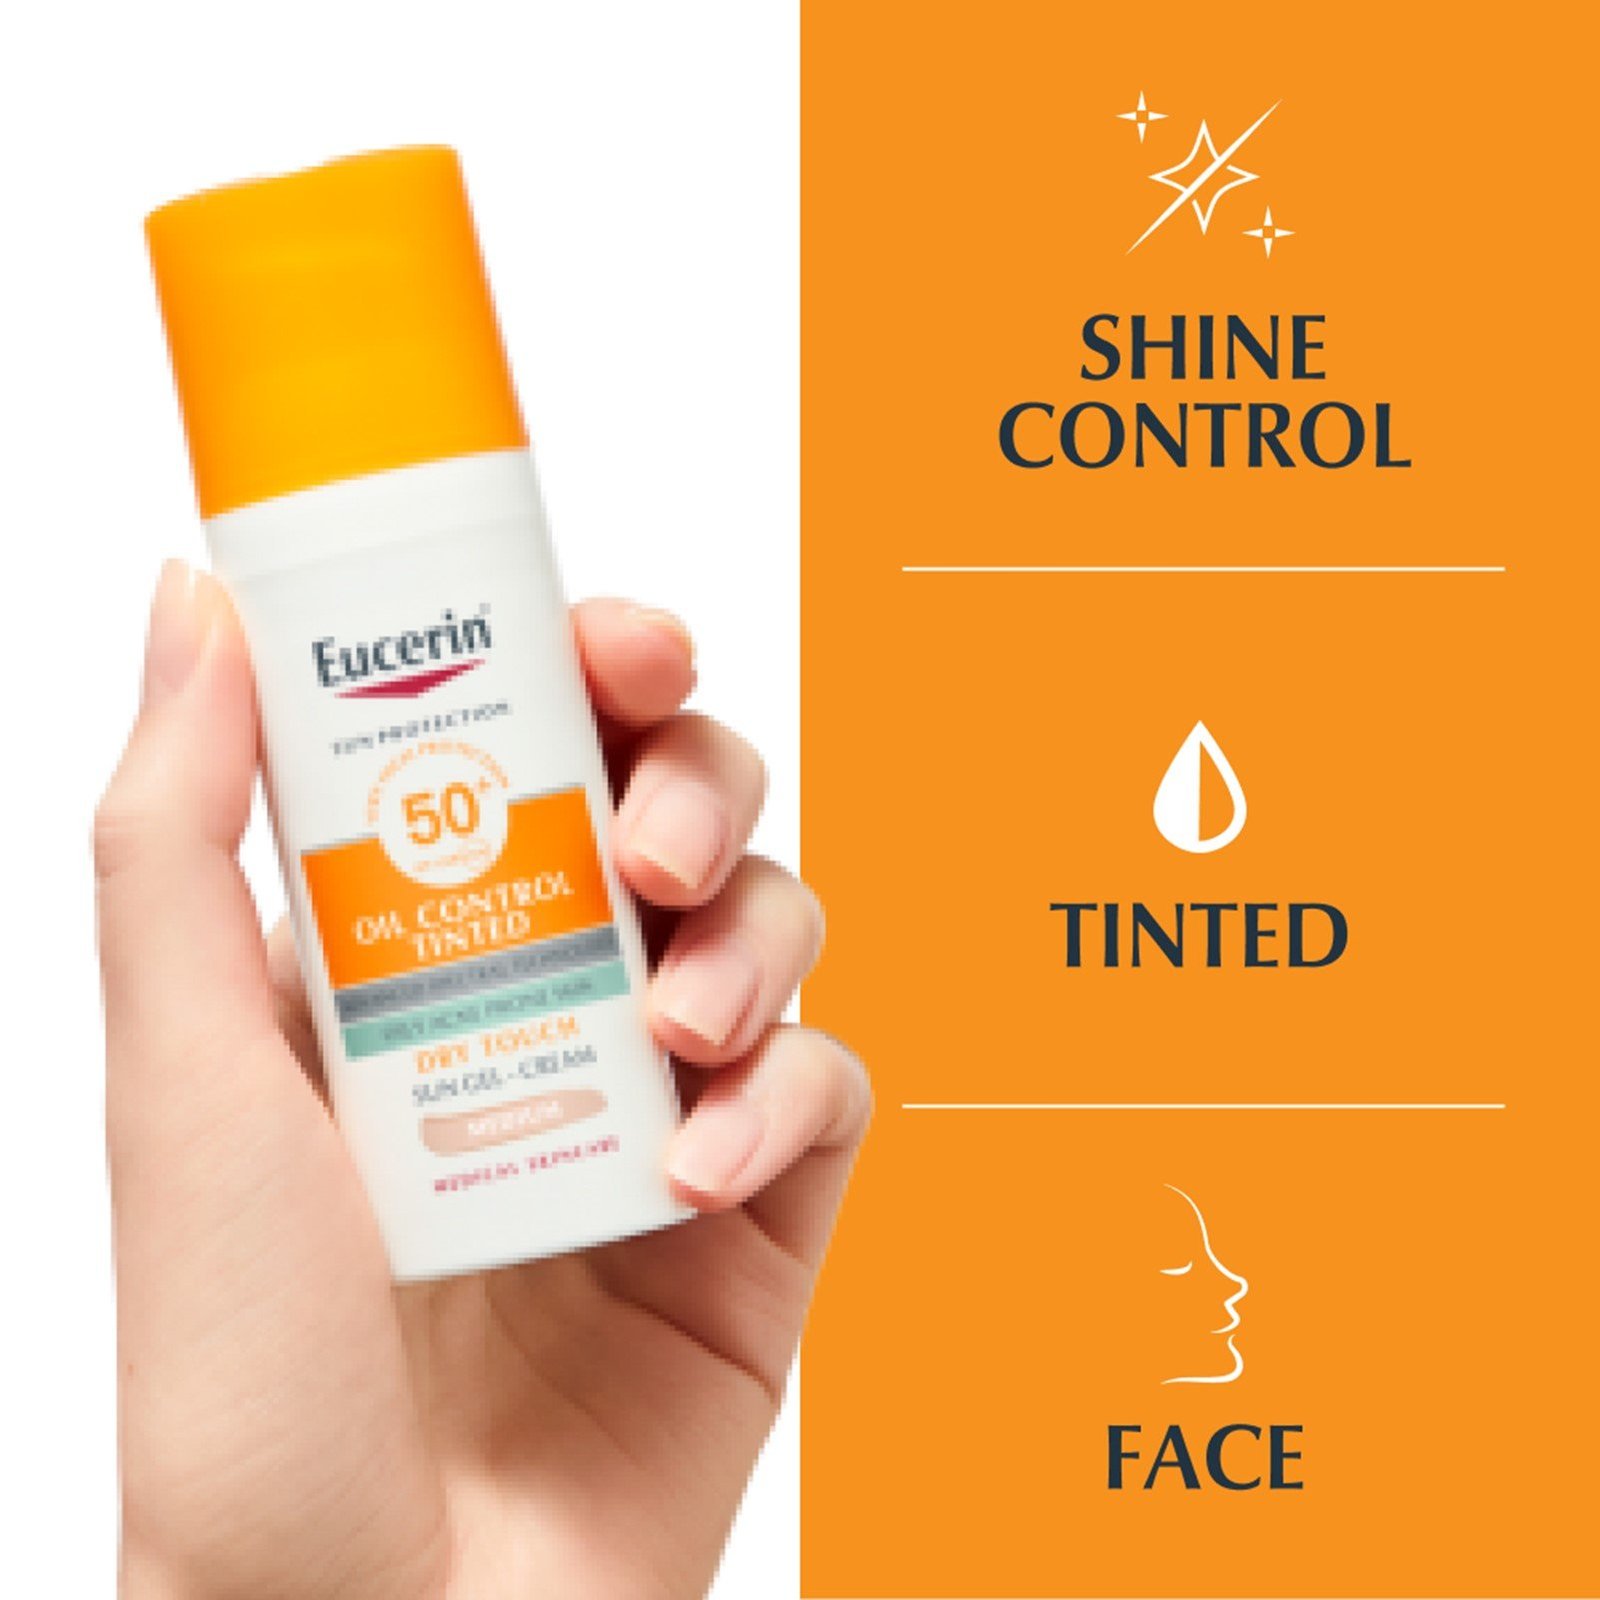 Eucerin Sun Gel-Crema Oil Control Anti-Brillo Toque Seco FPS 50+ (50ml –  Dermatology Point